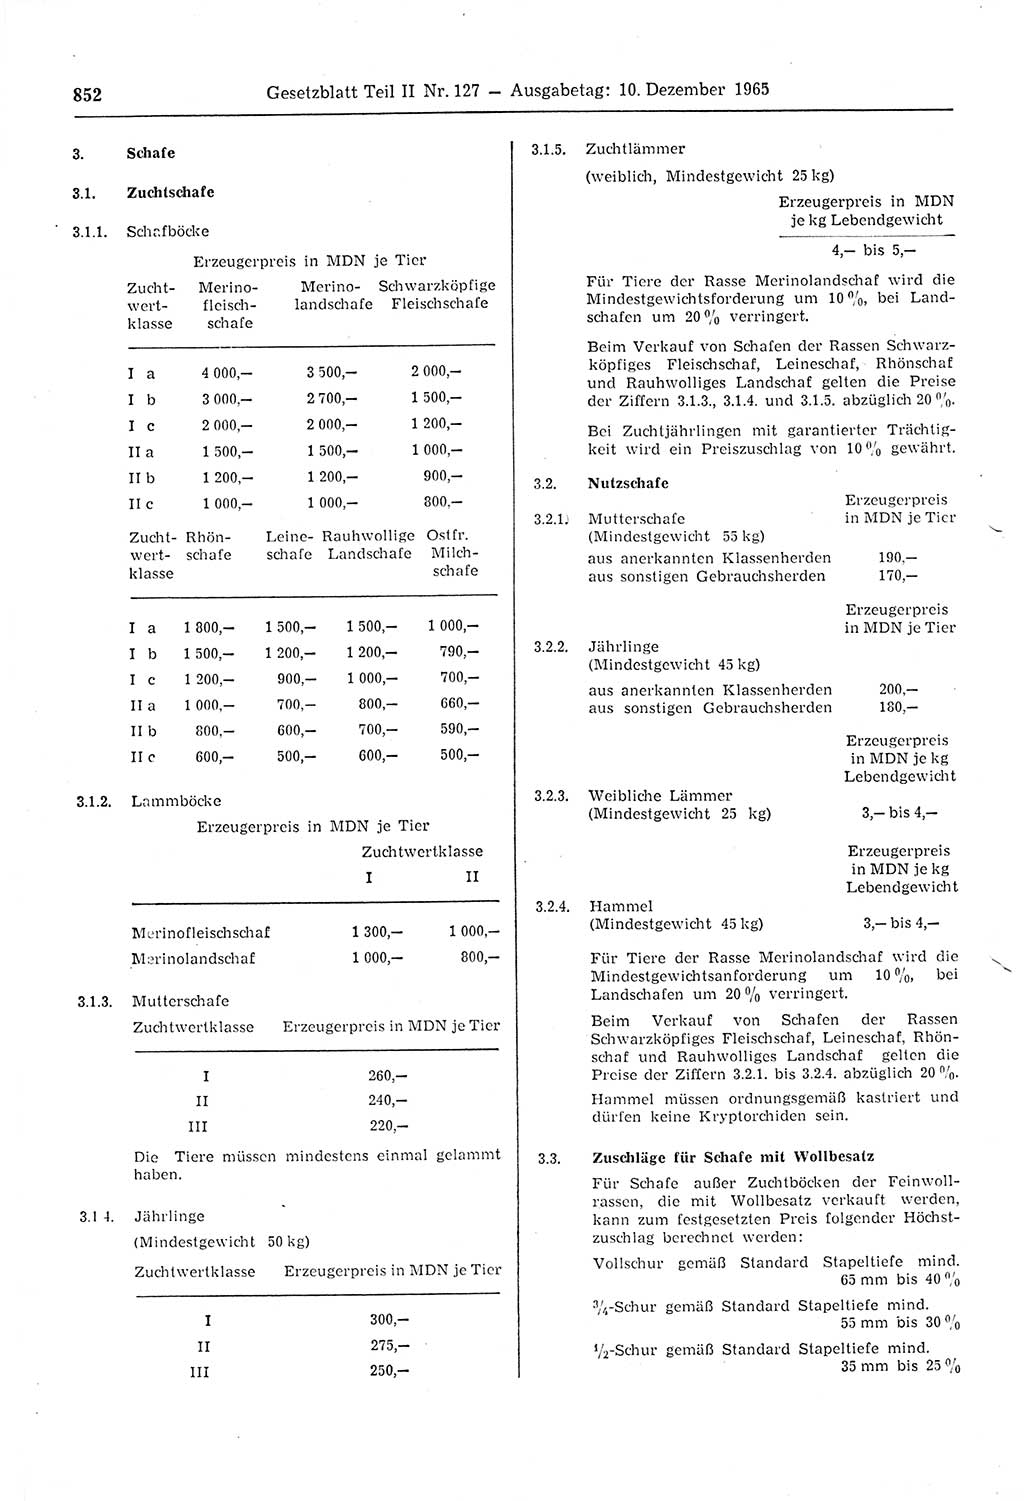 Gesetzblatt (GBl.) der Deutschen Demokratischen Republik (DDR) Teil ⅠⅠ 1965, Seite 852 (GBl. DDR ⅠⅠ 1965, S. 852)